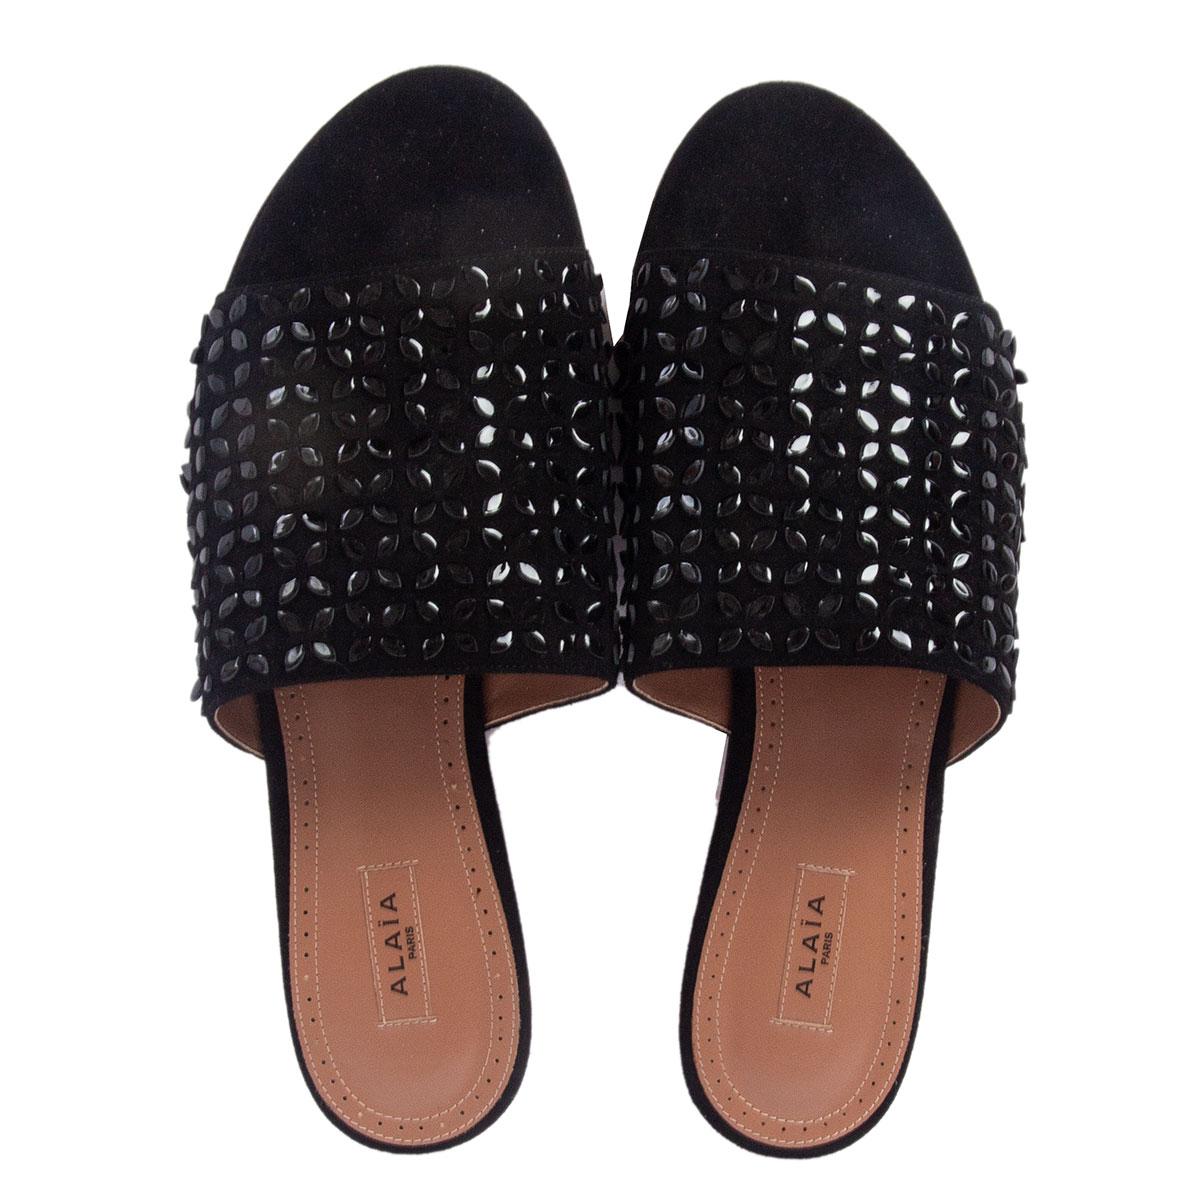 ALAIA daim noir et cuir EMBELLISHED SLIDES Sandales Chaussures 38 Pour femmes en vente